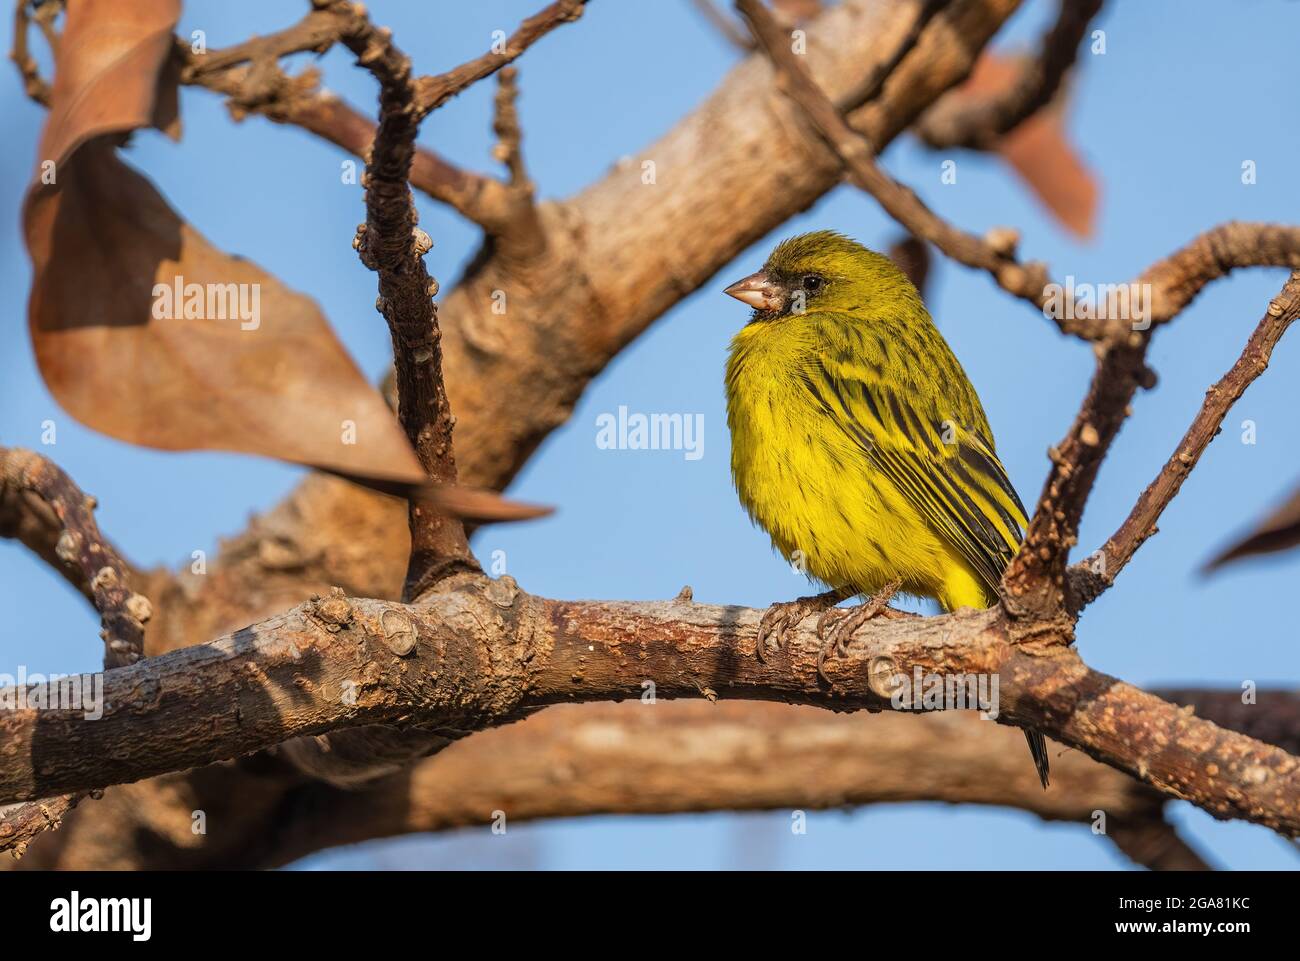 Citril africain - Crithagra citrinelloides, magnifique oiseau perching des buissons et des prairies africains, lac Ziway, Ethiopie. Banque D'Images